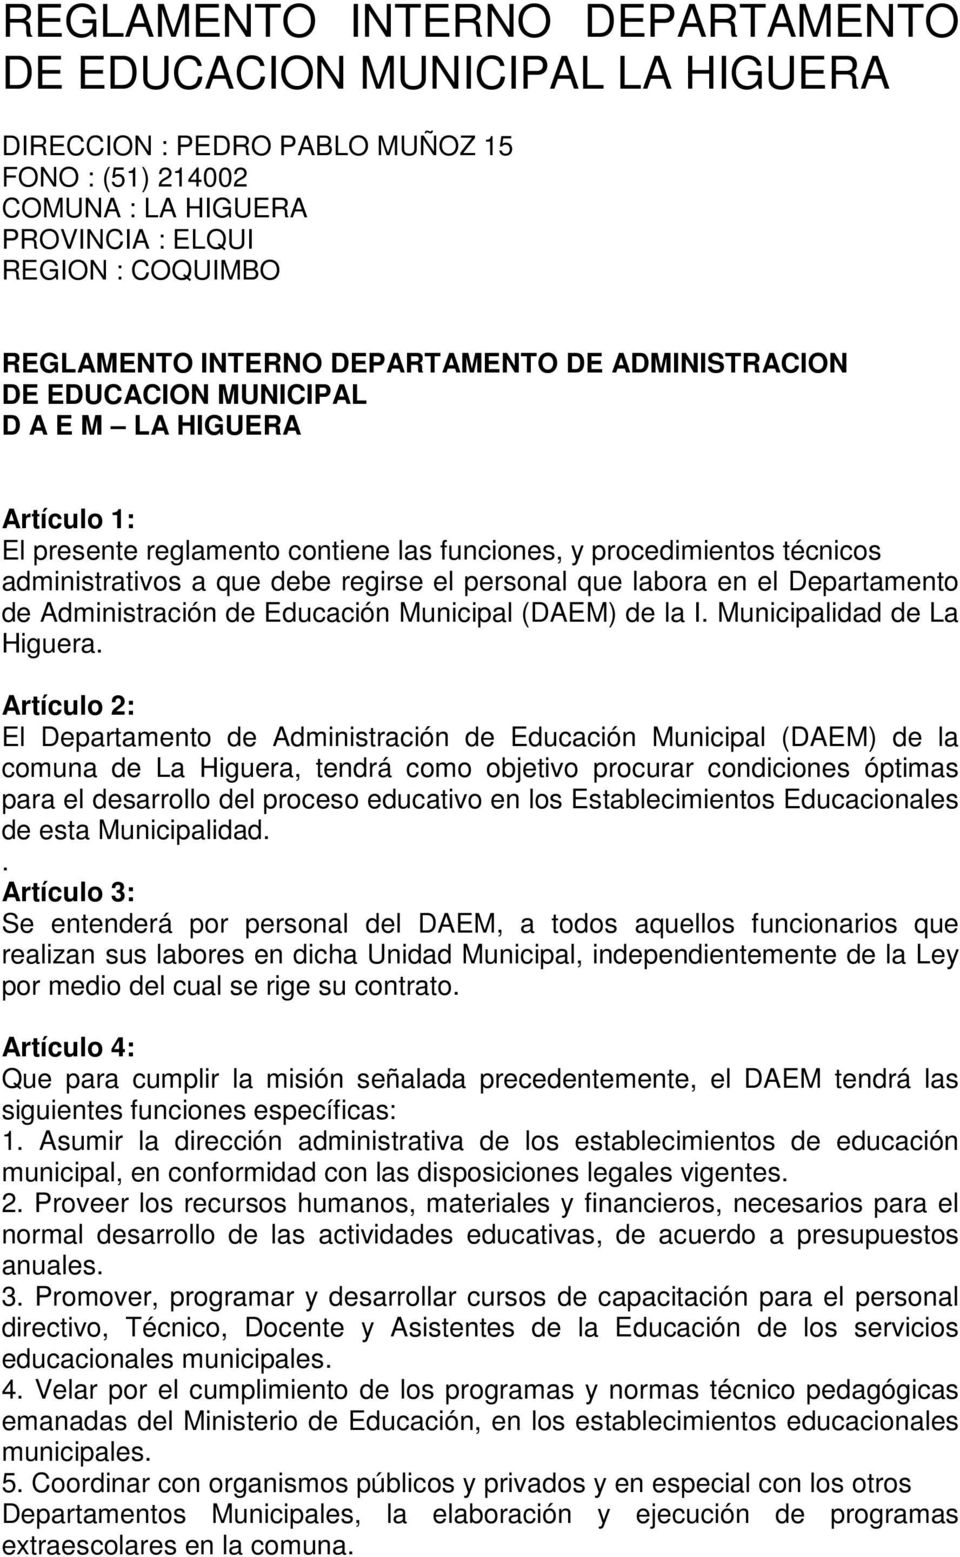 personal que labora en el Departamento de Administración de Educación Municipal (DAEM) de la I. Municipalidad de La Higuera.